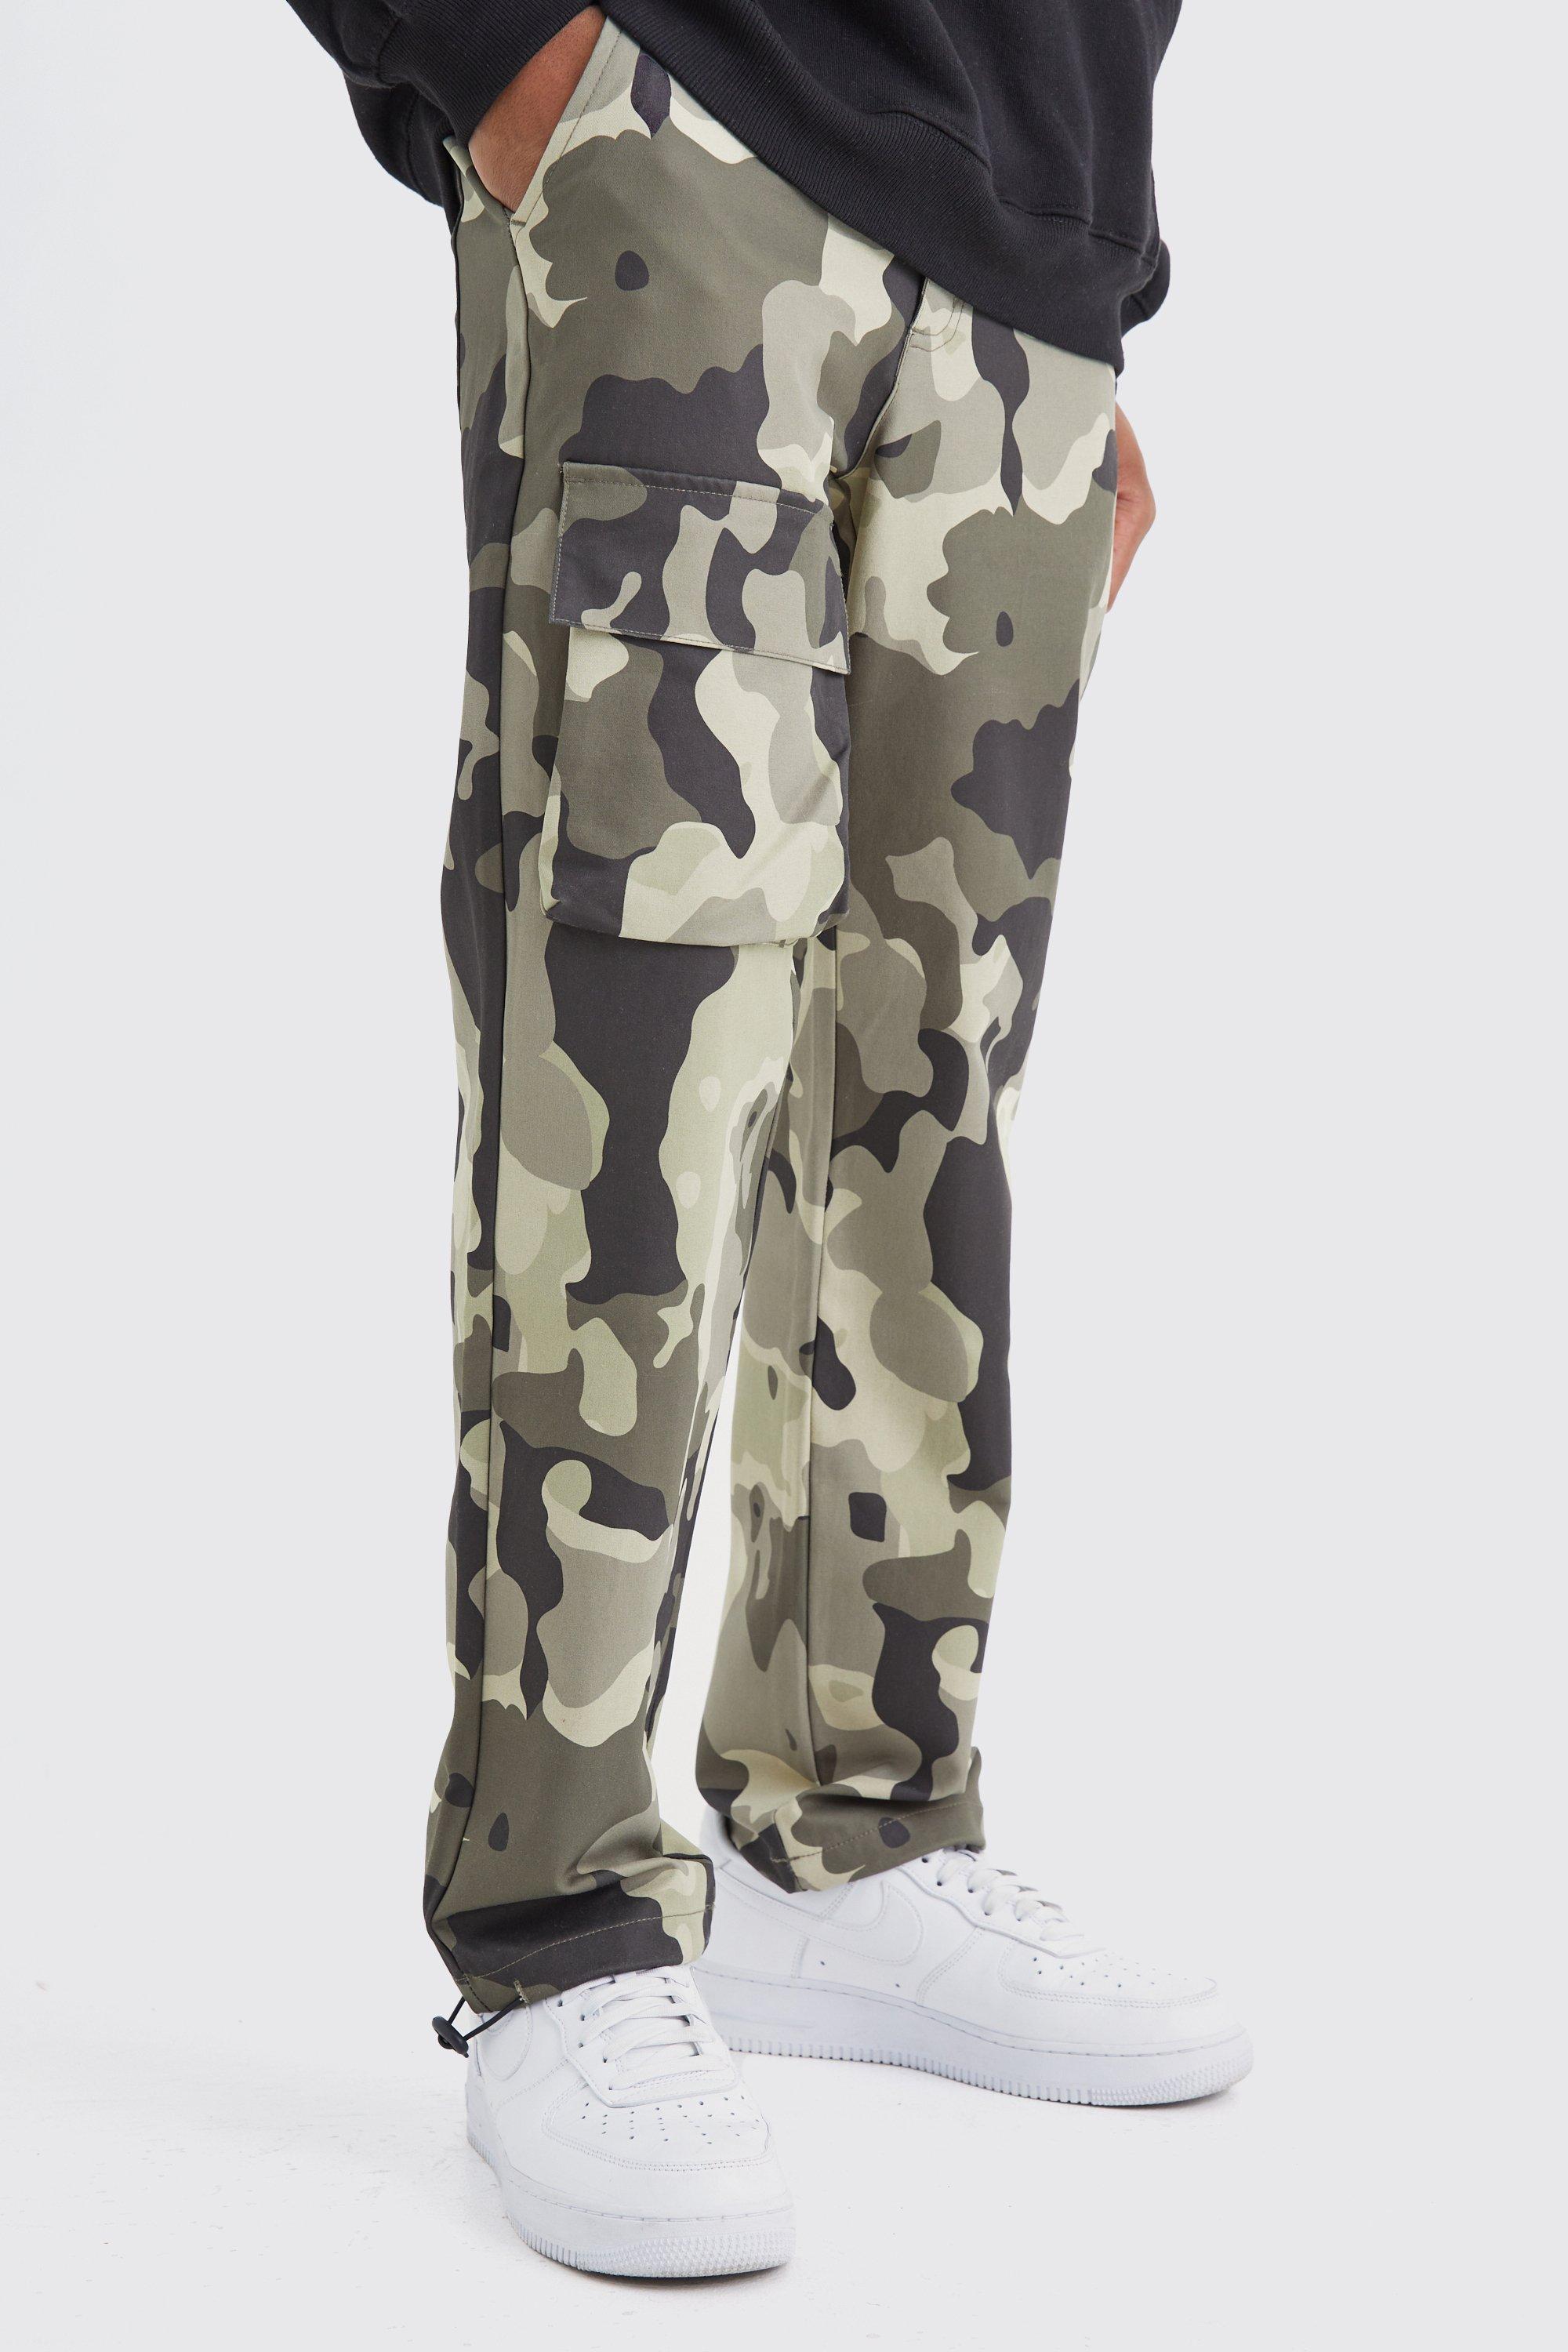 pantalon cargo droit à imprimé camouflage homme - kaki - 36, kaki